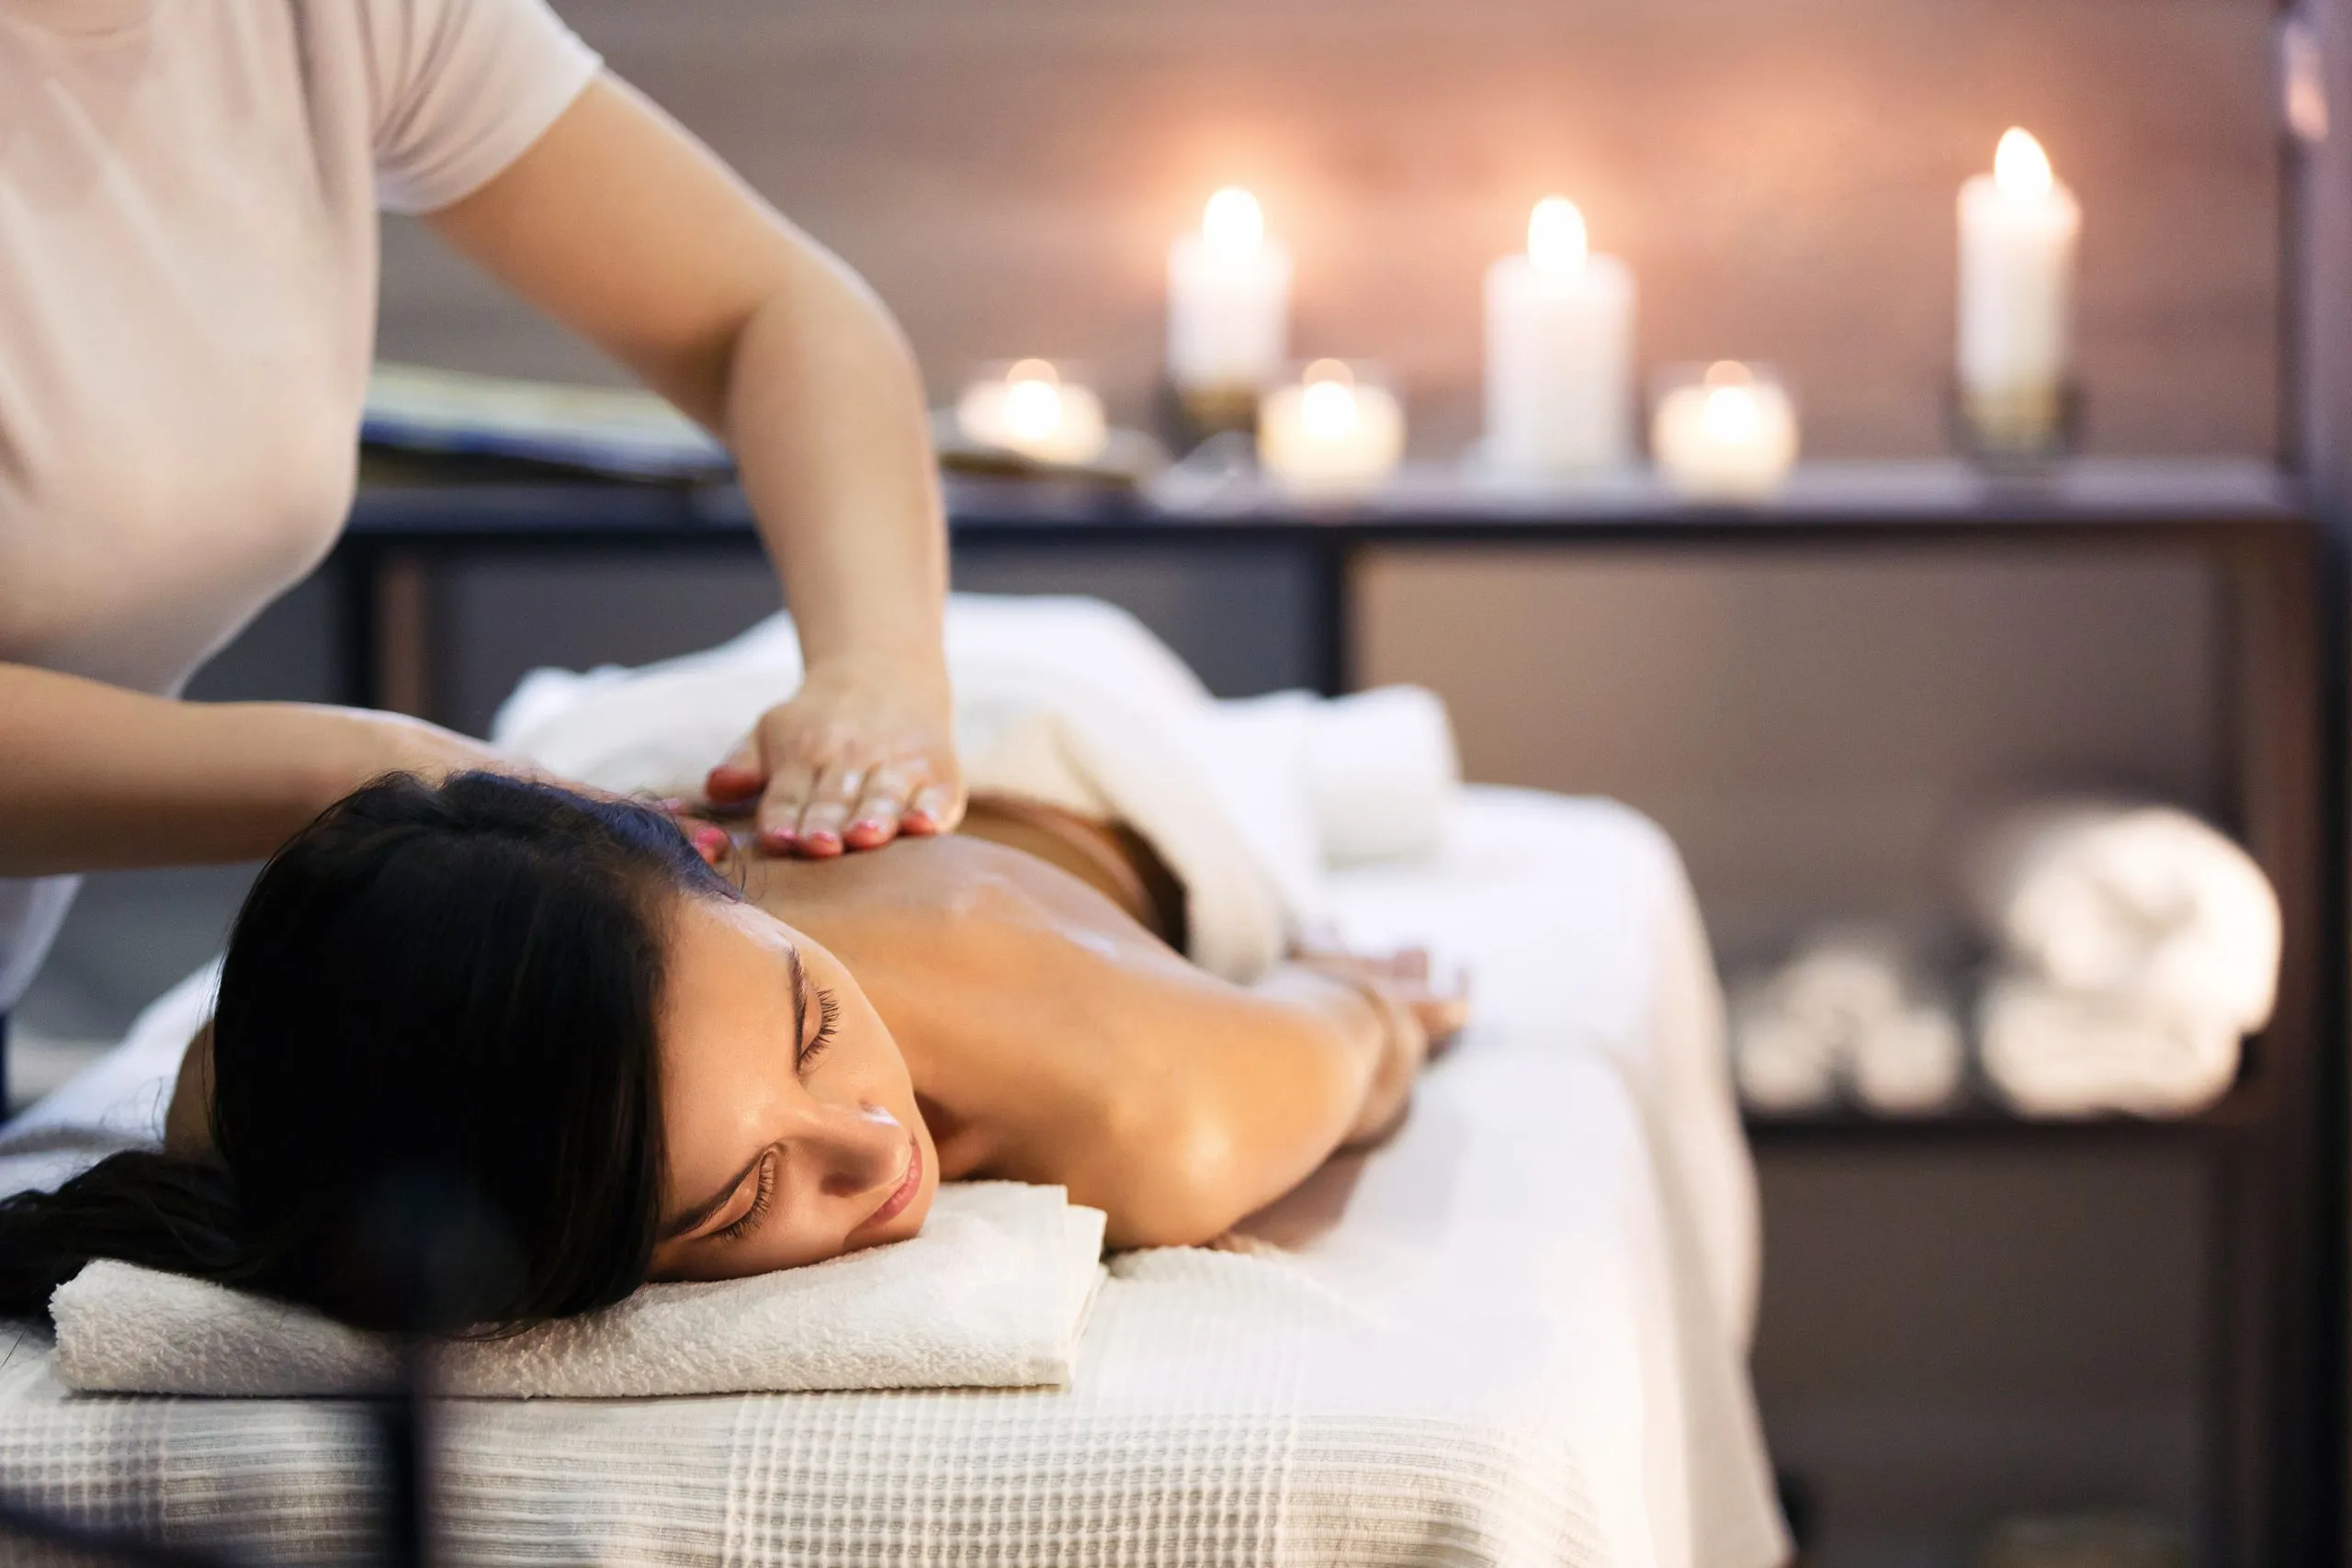 Körpermassage und Spa-Behandlung im modernen Salon mit Kerzenlicht